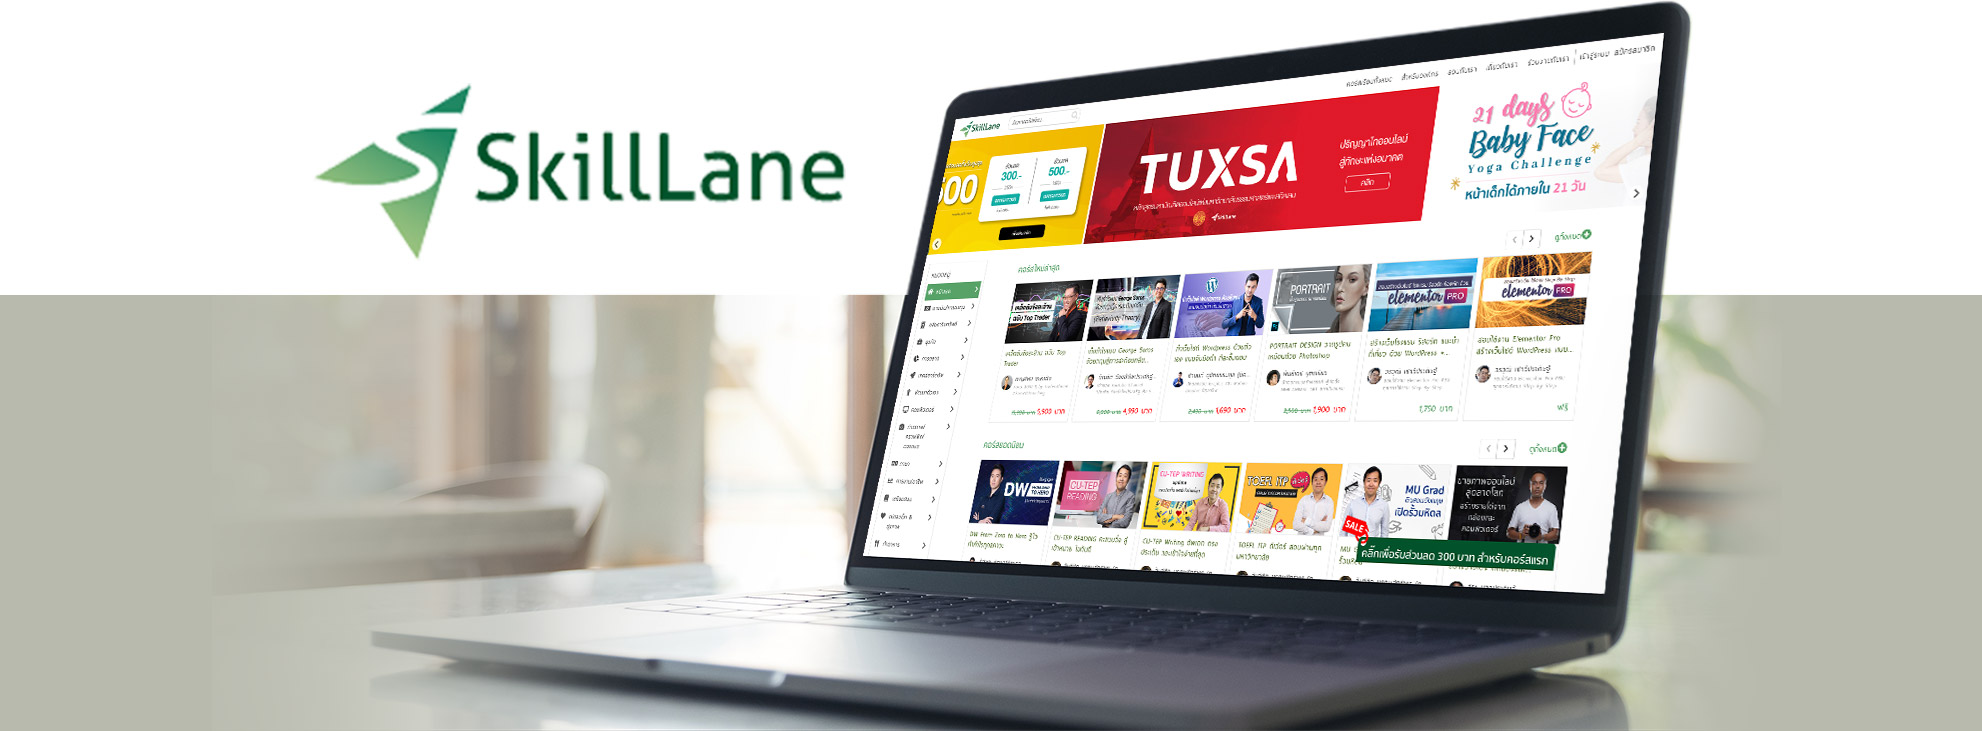 เว็บไซต์ SkillLane - Startup Thailand